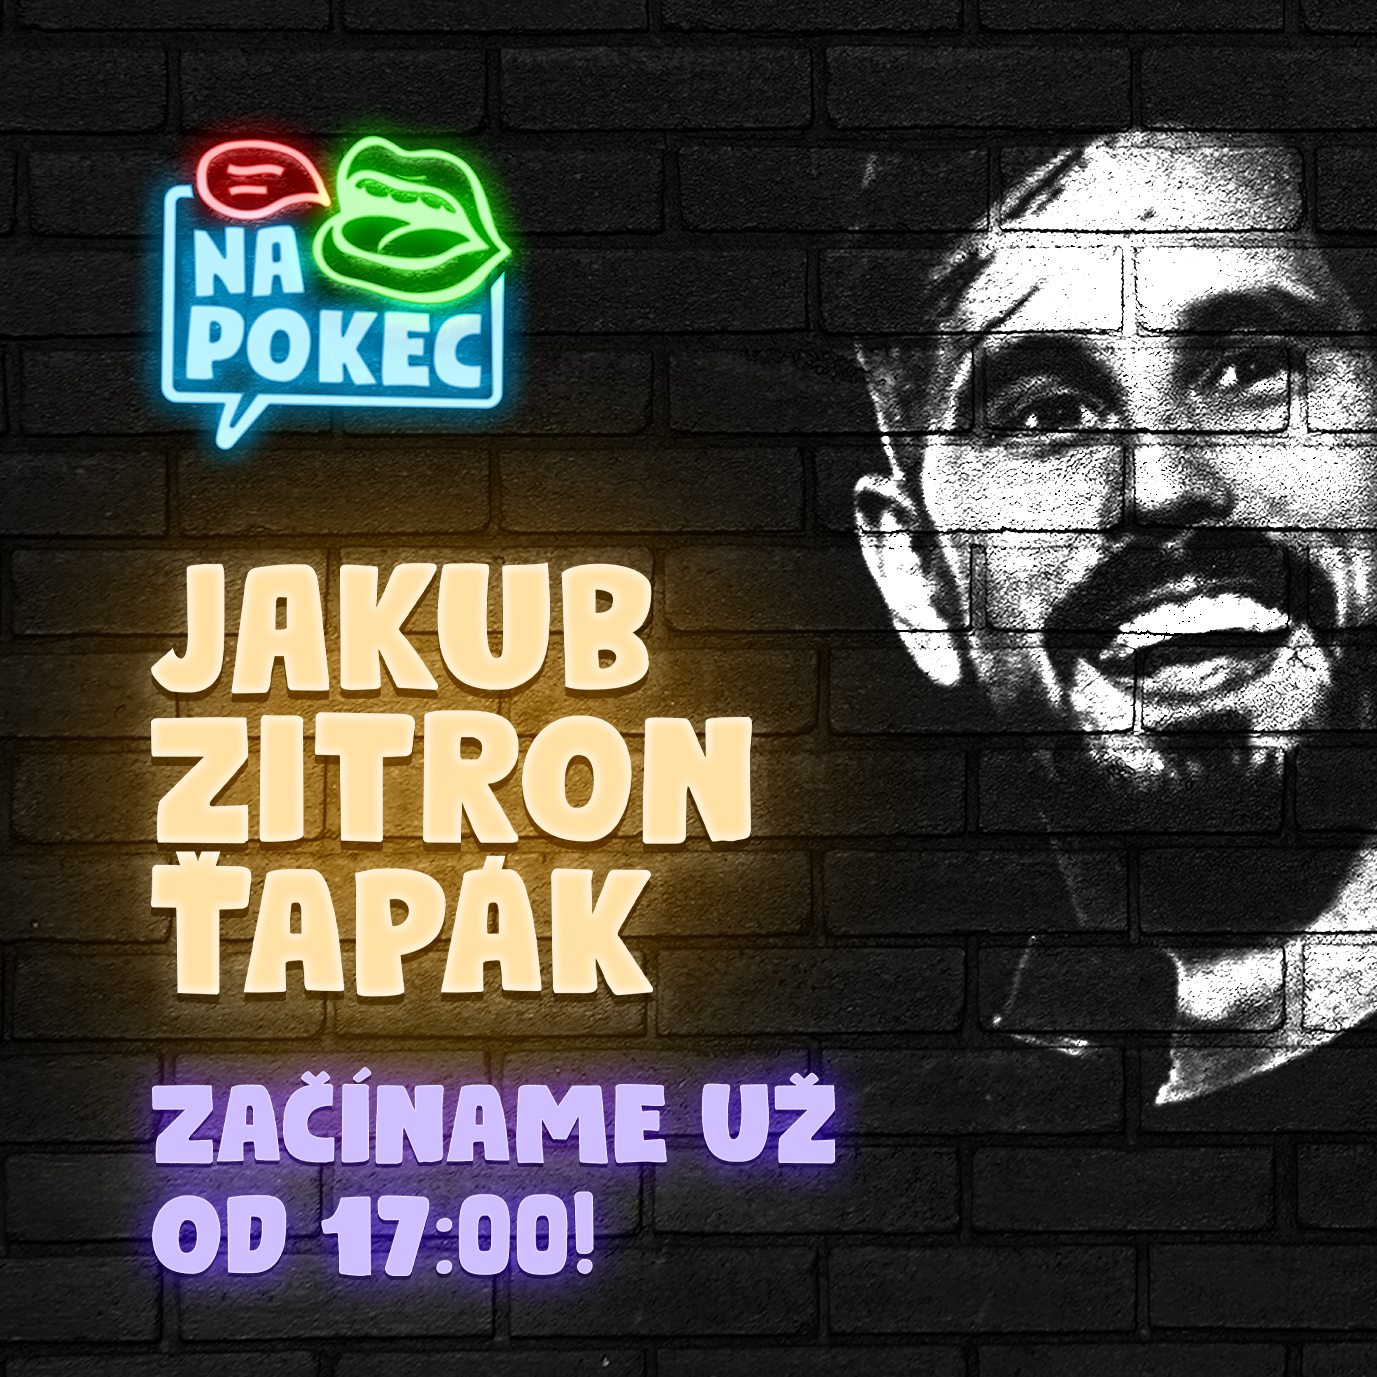 Vo štvrtok 19. mája sa prihláste do chatovacej miestnosti "Na pokec" na portáli Pokec.sk.